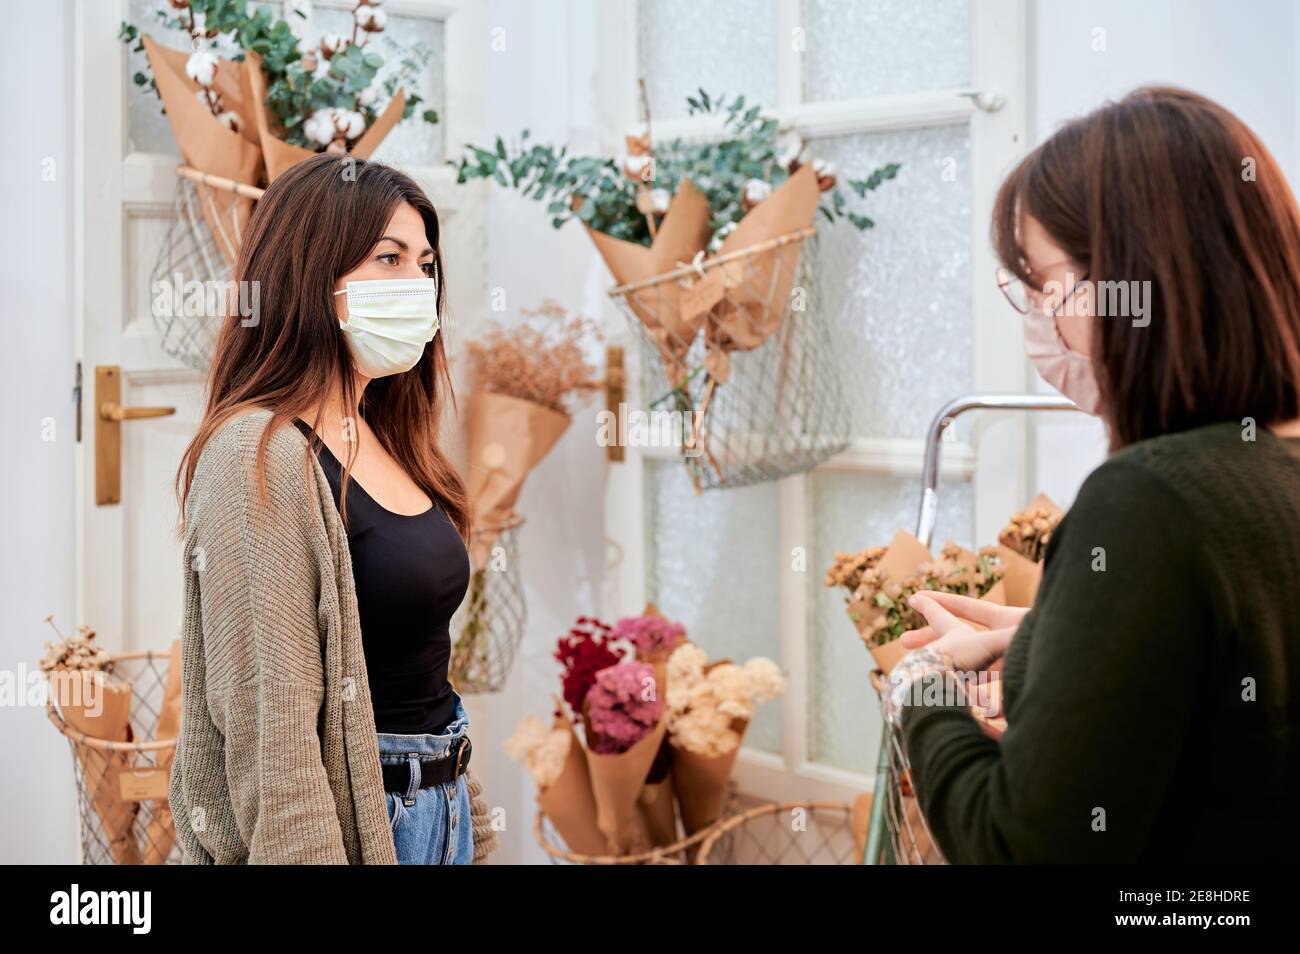 Cliente femminile in maschera protettiva consulenza con venditore che lavora in negozio con diversi mazzi di fiori avvolti in confezione di carta a zero rifiuti Foto Stock